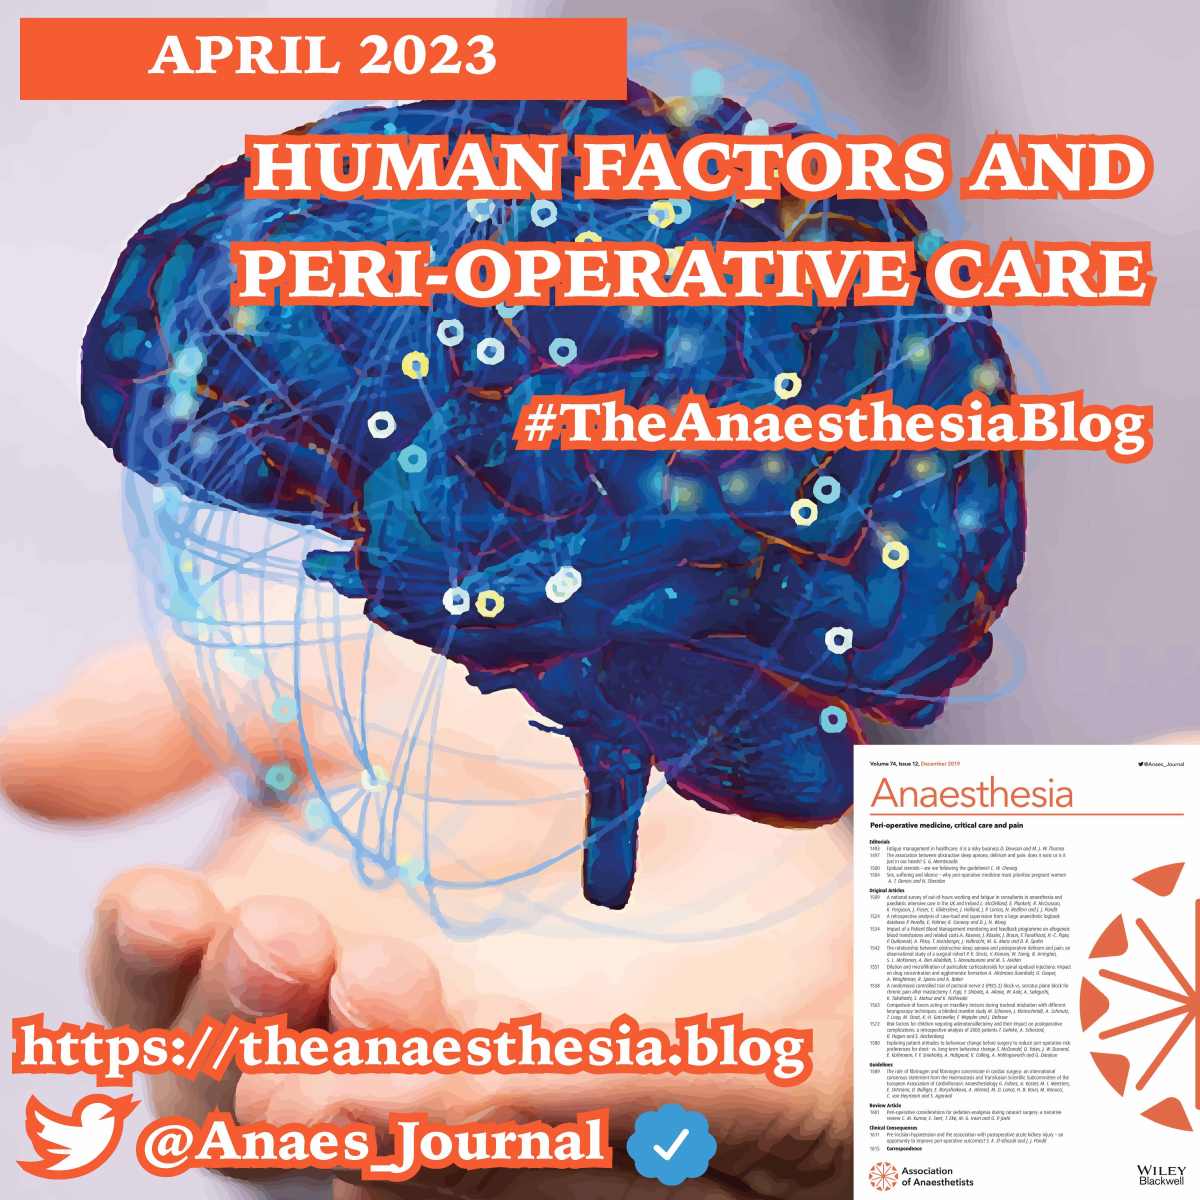 Human factors and peri-operative care